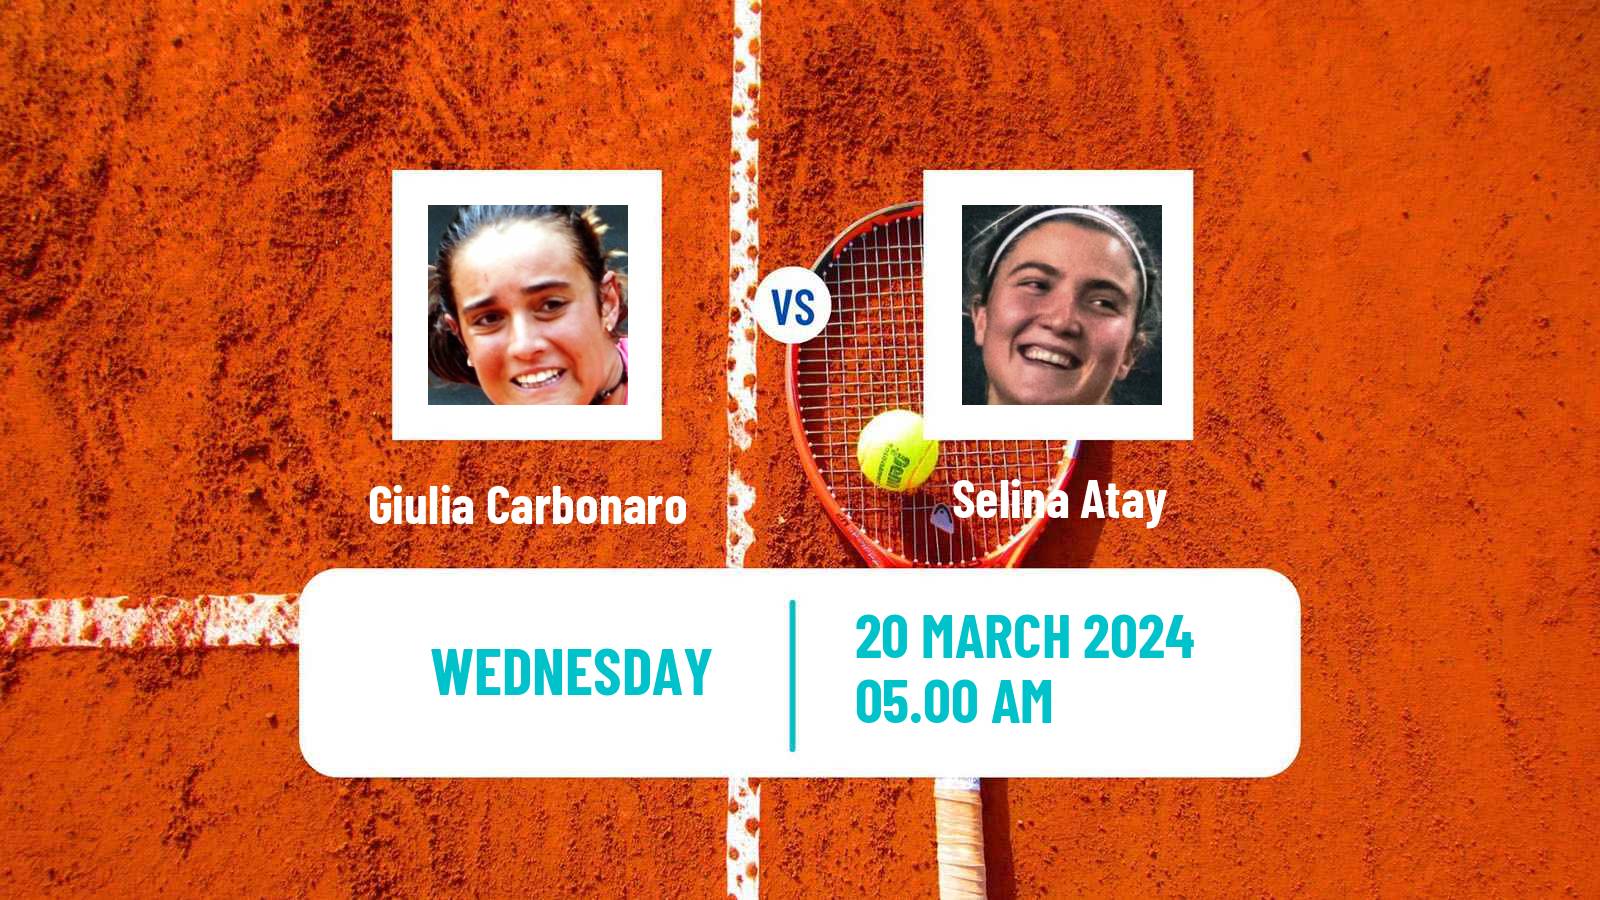 Tennis ITF W15 Antalya 6 Women Giulia Carbonaro - Selina Atay